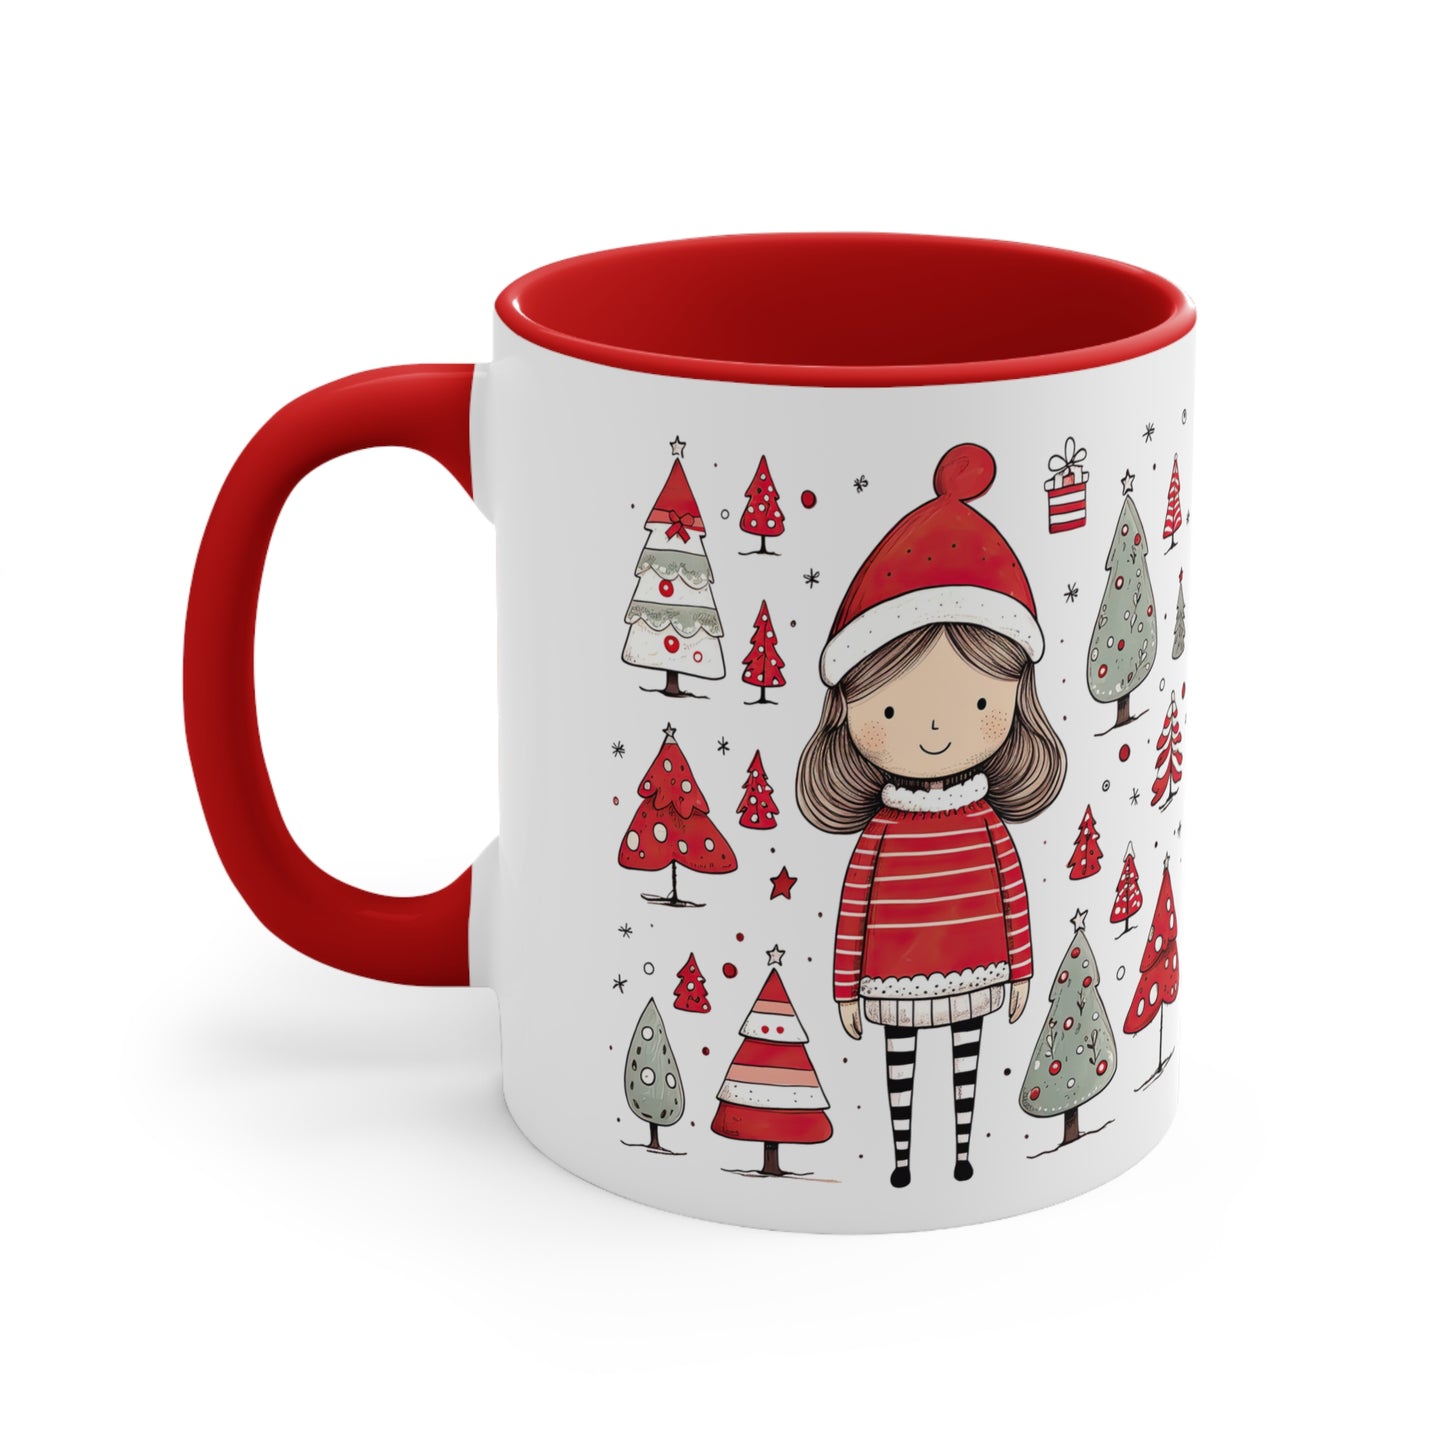 Warm and cozy Christmas mug for cold nights,perfect gift for Christmas, coffee mug, Christmas mugs, Mug of joy A perfect gift for  Christmas